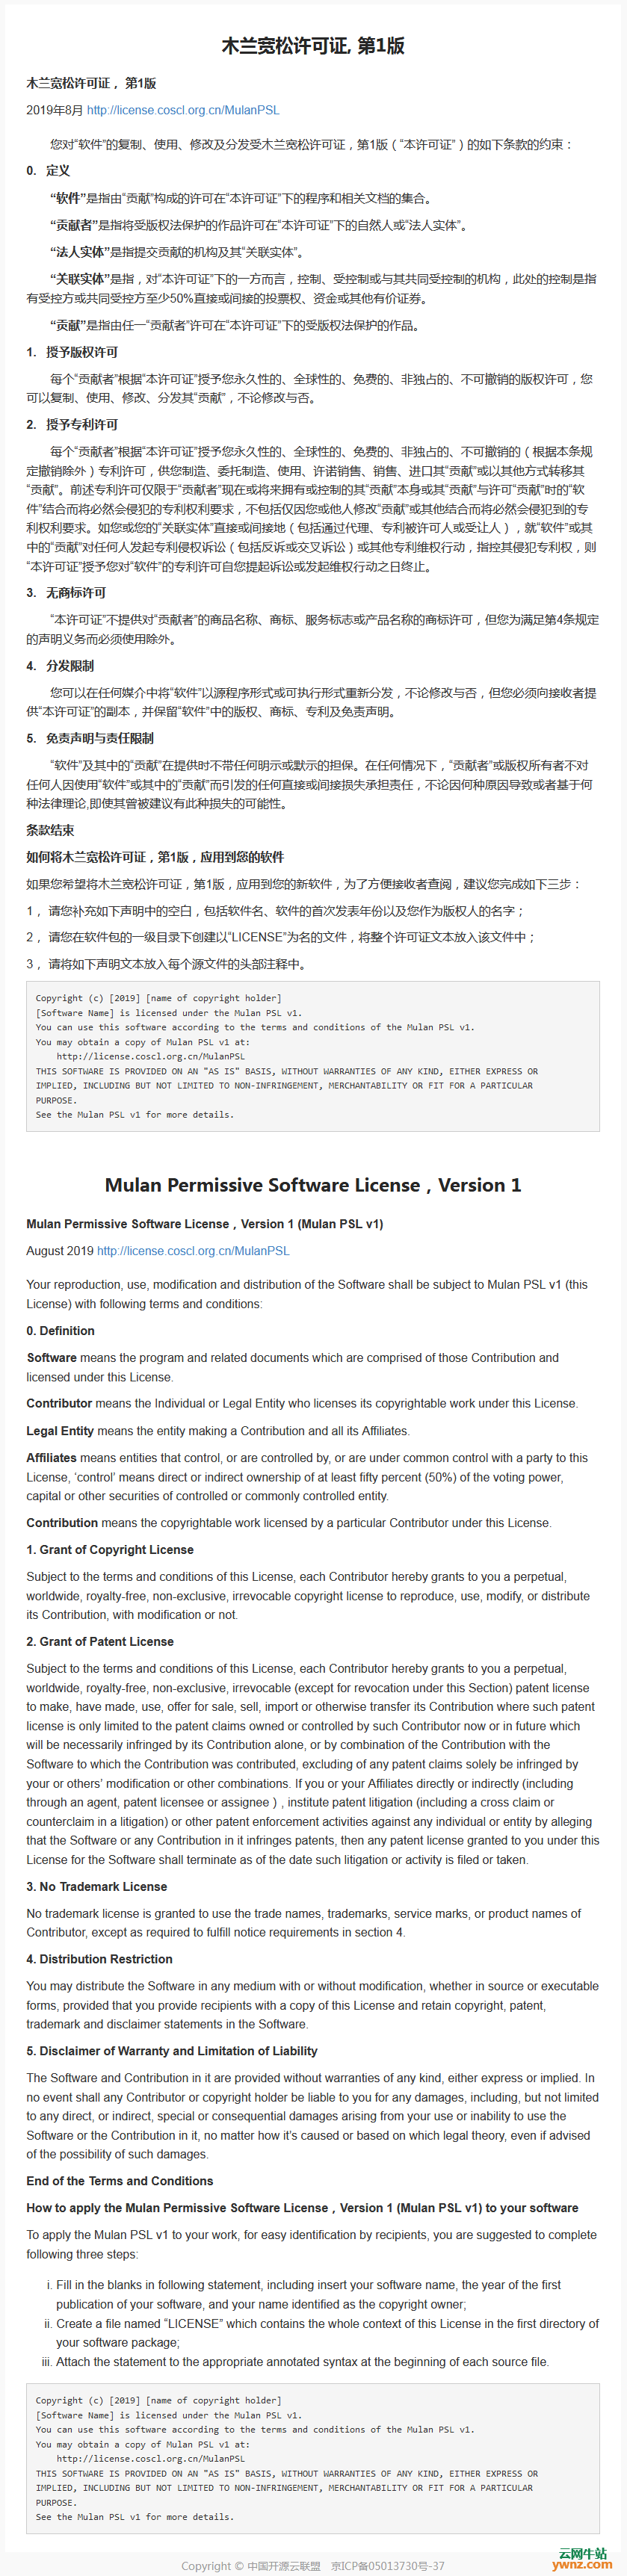 木兰宽松许可证第1版中英文详情，附将木兰宽松许可证应用到软件的方法